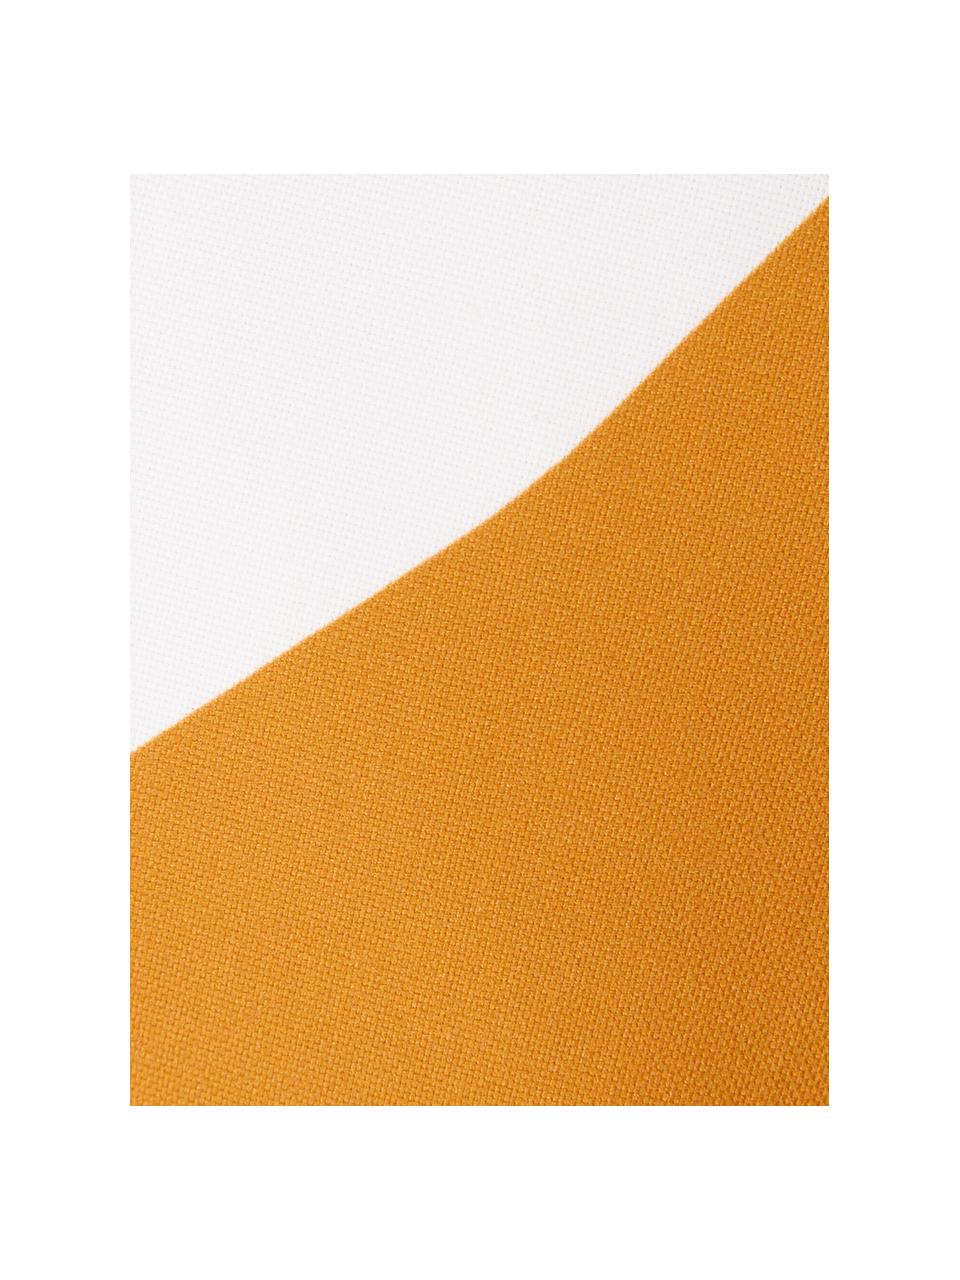 Kussenhoes Linn met geometrische vormen, Weeftechniek: panama, Wit, donkerblauw, grijs, oranje, 40 x 40 cm